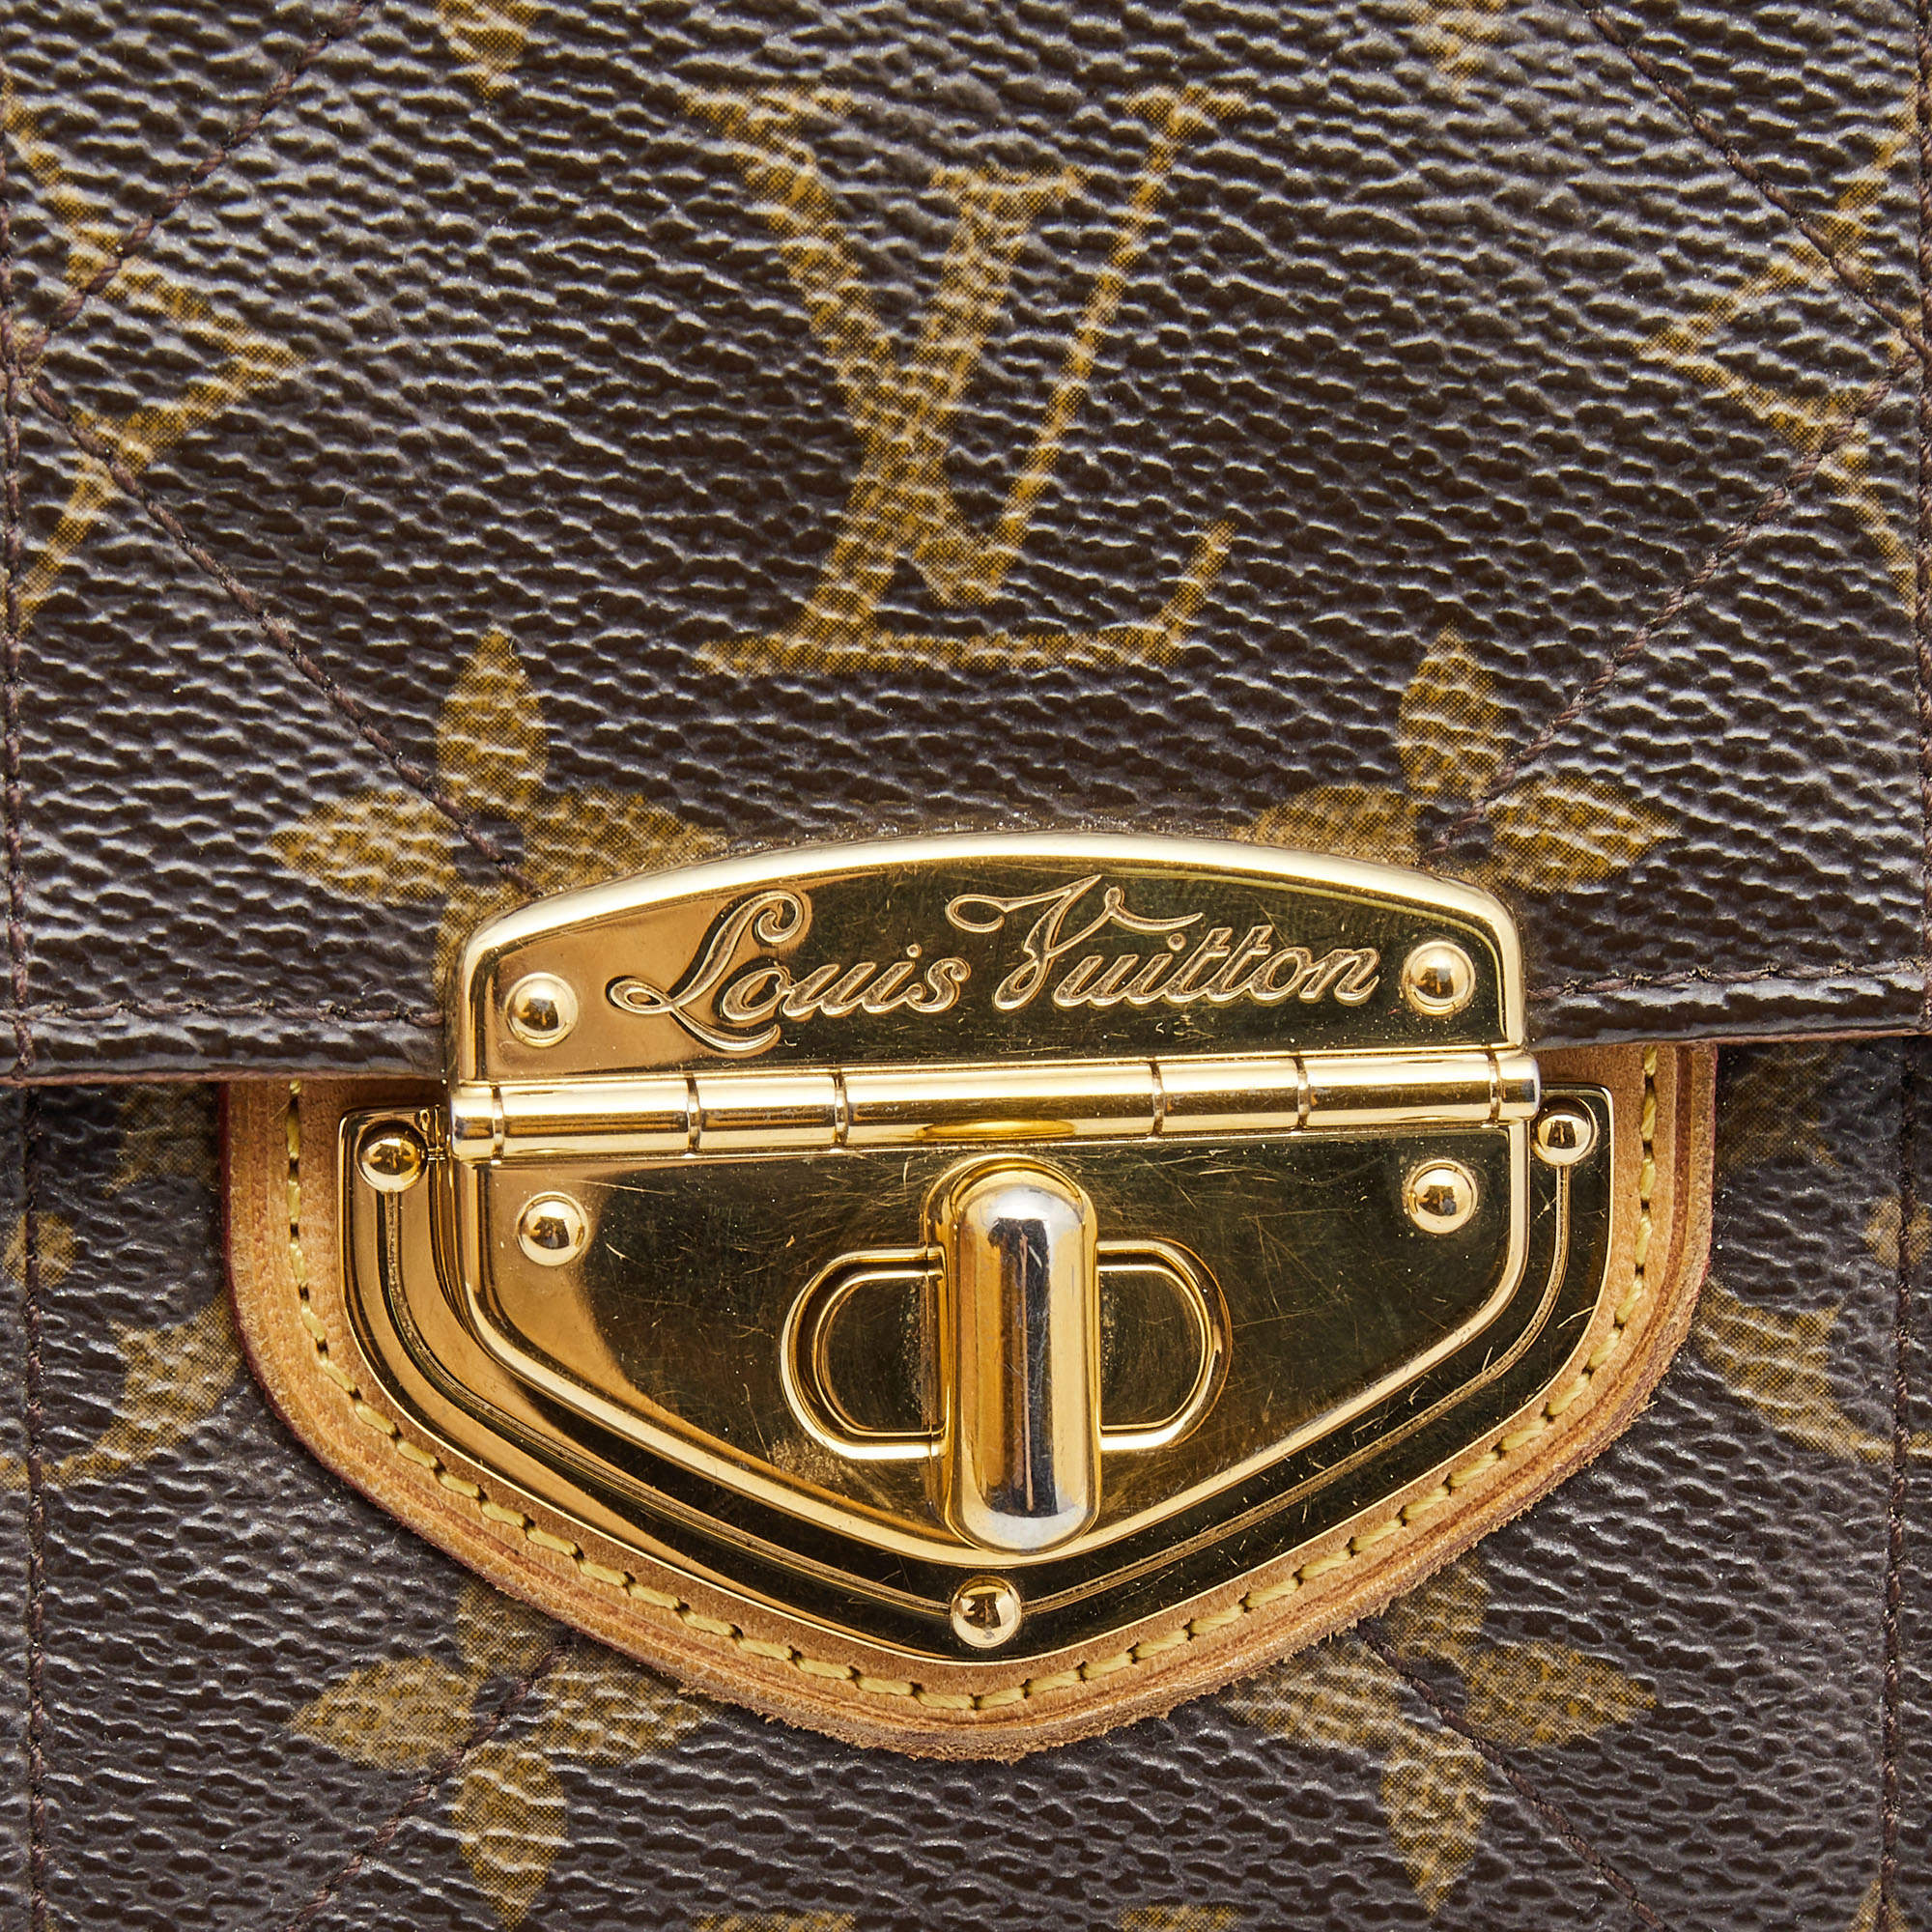 Louis Vuitton Monogram Canvas Etoile Compact Wallet QJA08S5Z0B048